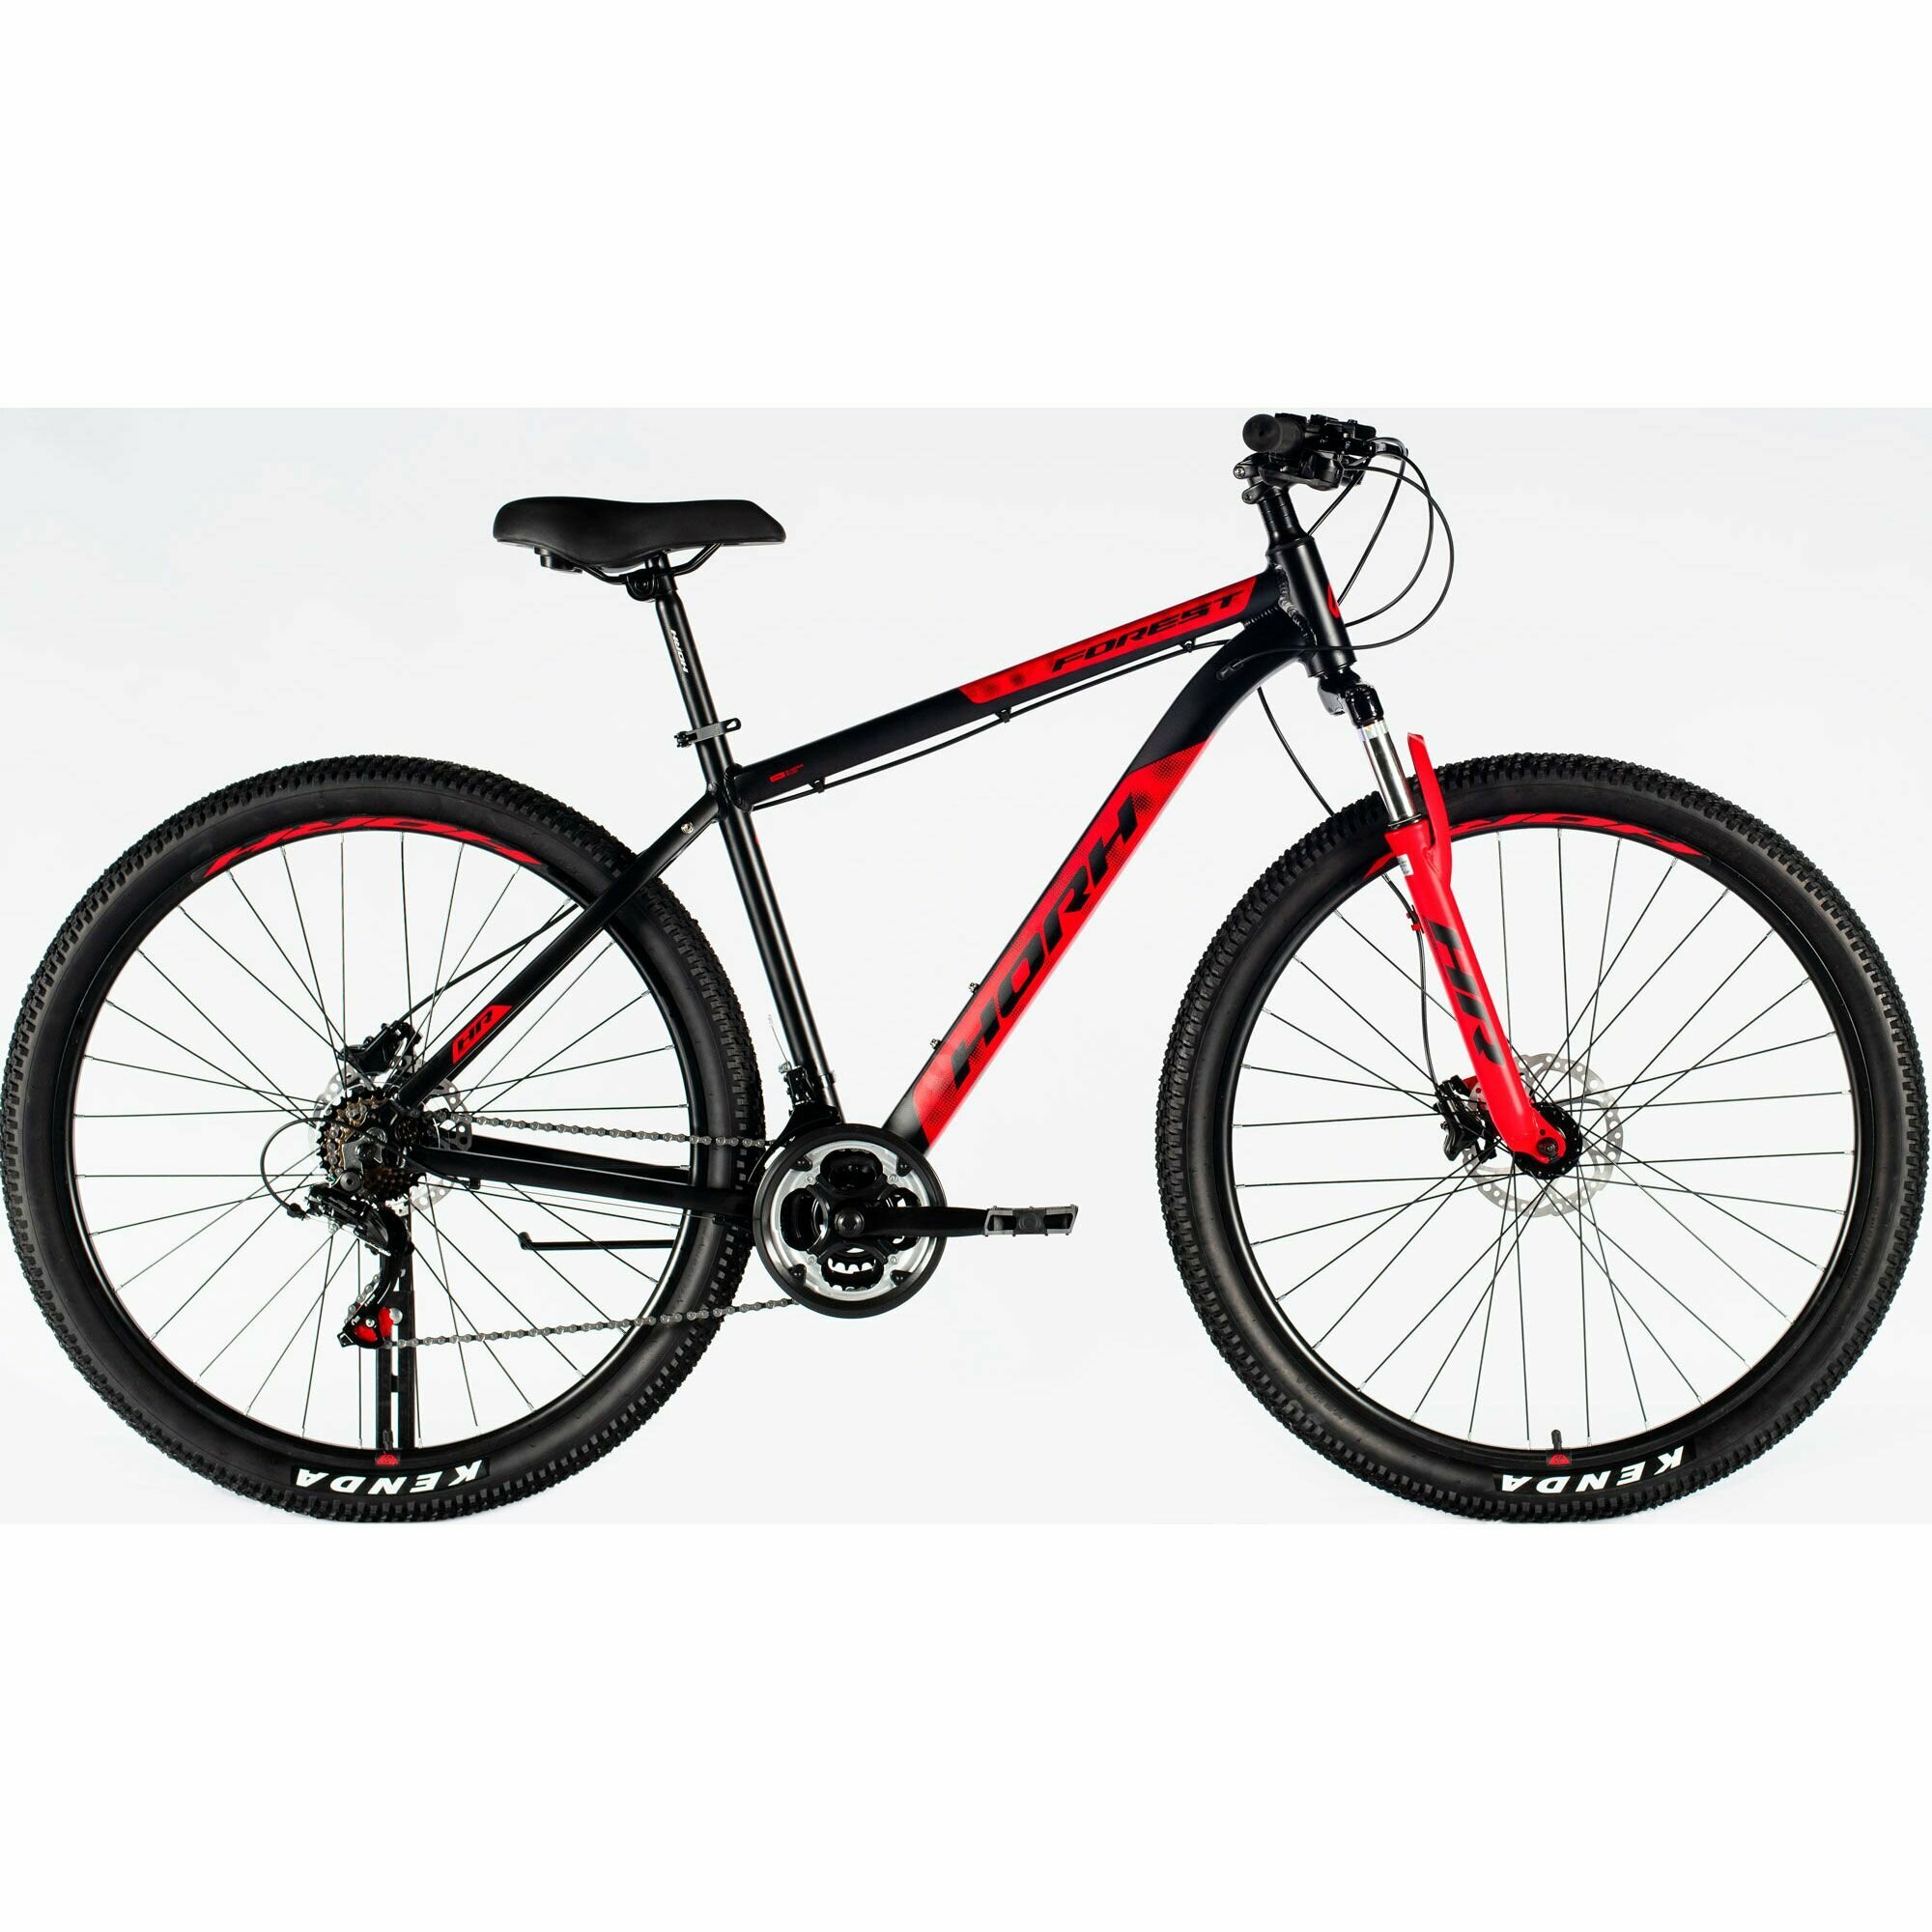 Велосипед горный HORH FOREST FHD 9.0 29" (2024), хардтейл, взрослый, мужской, алюминиевая рама, 21 скорость, дисковые гидравлические тормоза, цвет Black-Red, черный/красный цвет, размер рамы 19", для роста 180-190 см